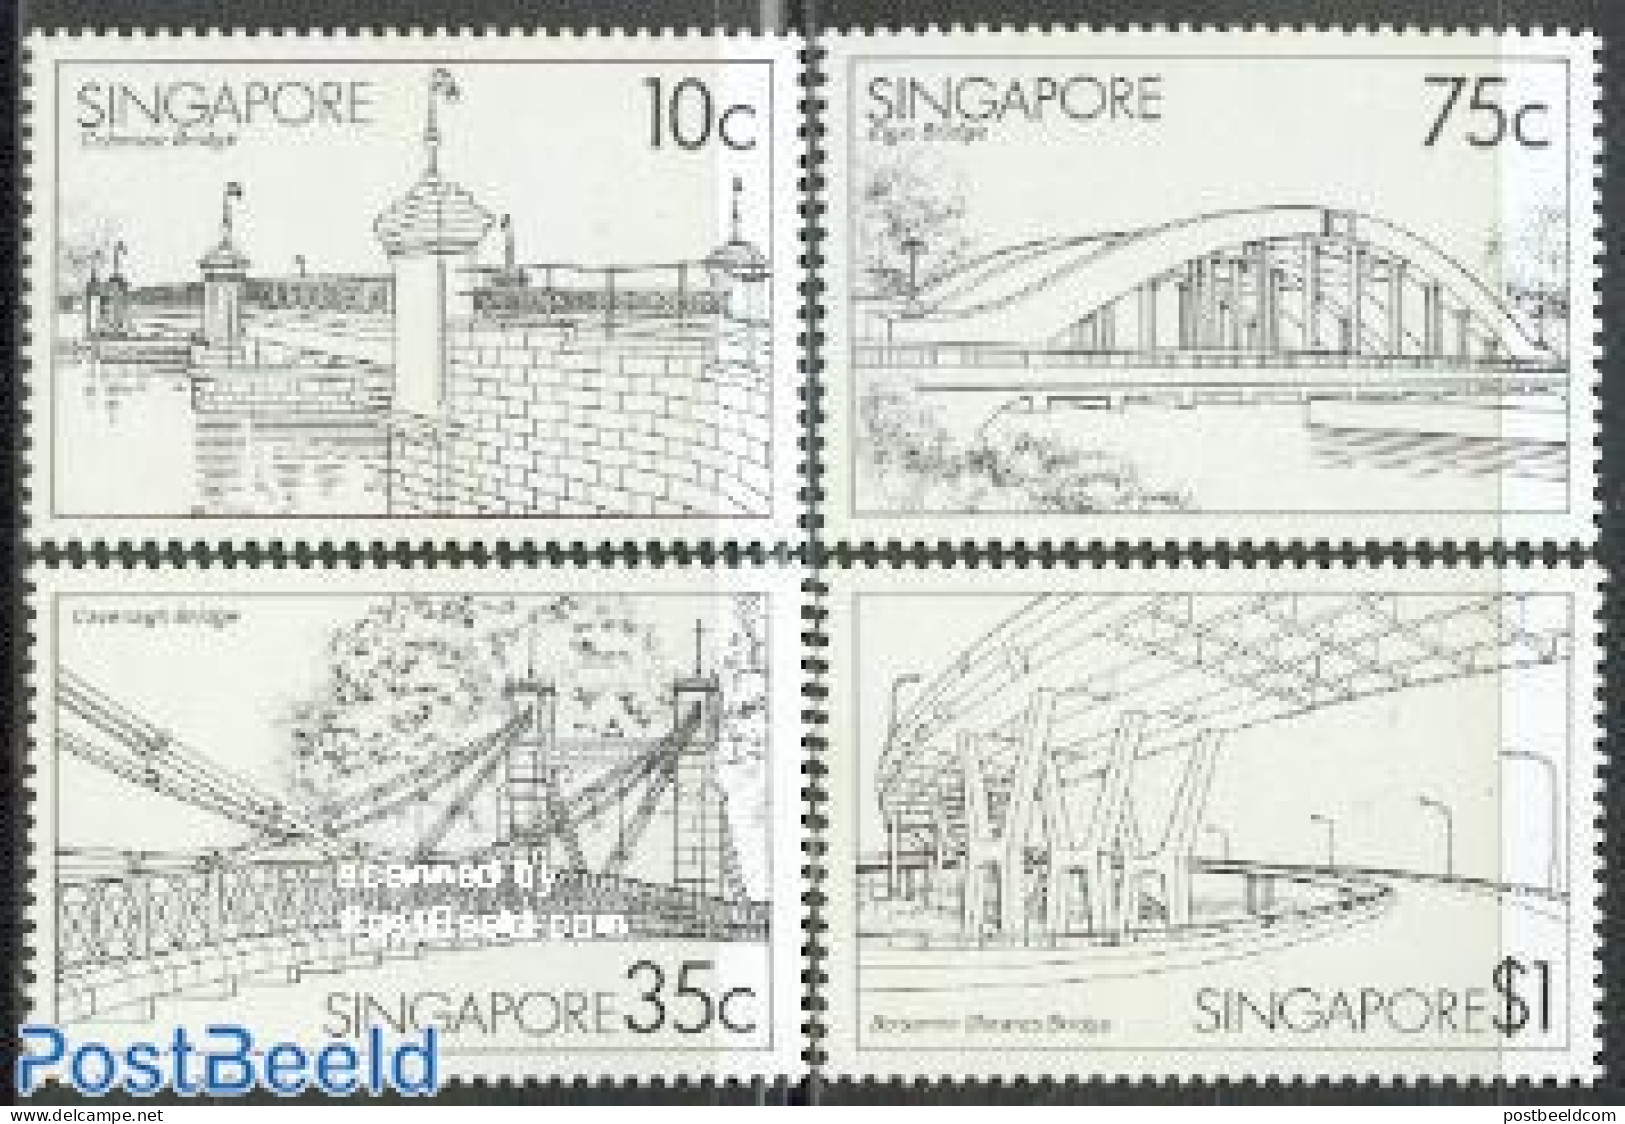 Singapore 1985 Bridges 4v, Mint NH, Art - Bridges And Tunnels - Ponti